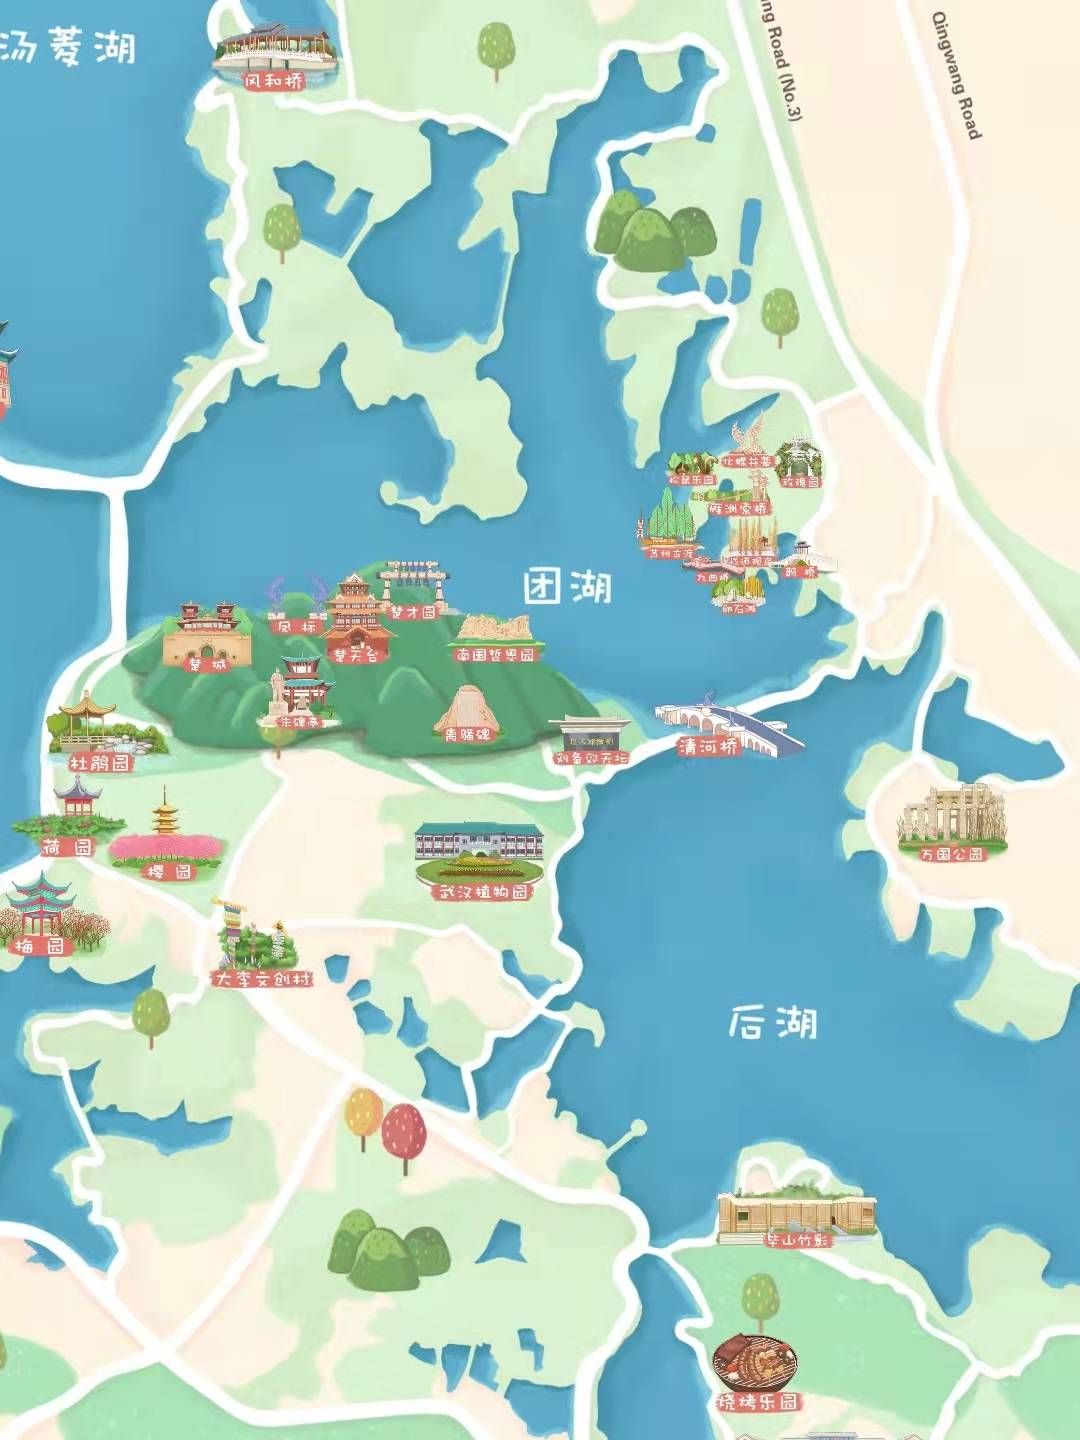 东湖落雁岛景区地图图片